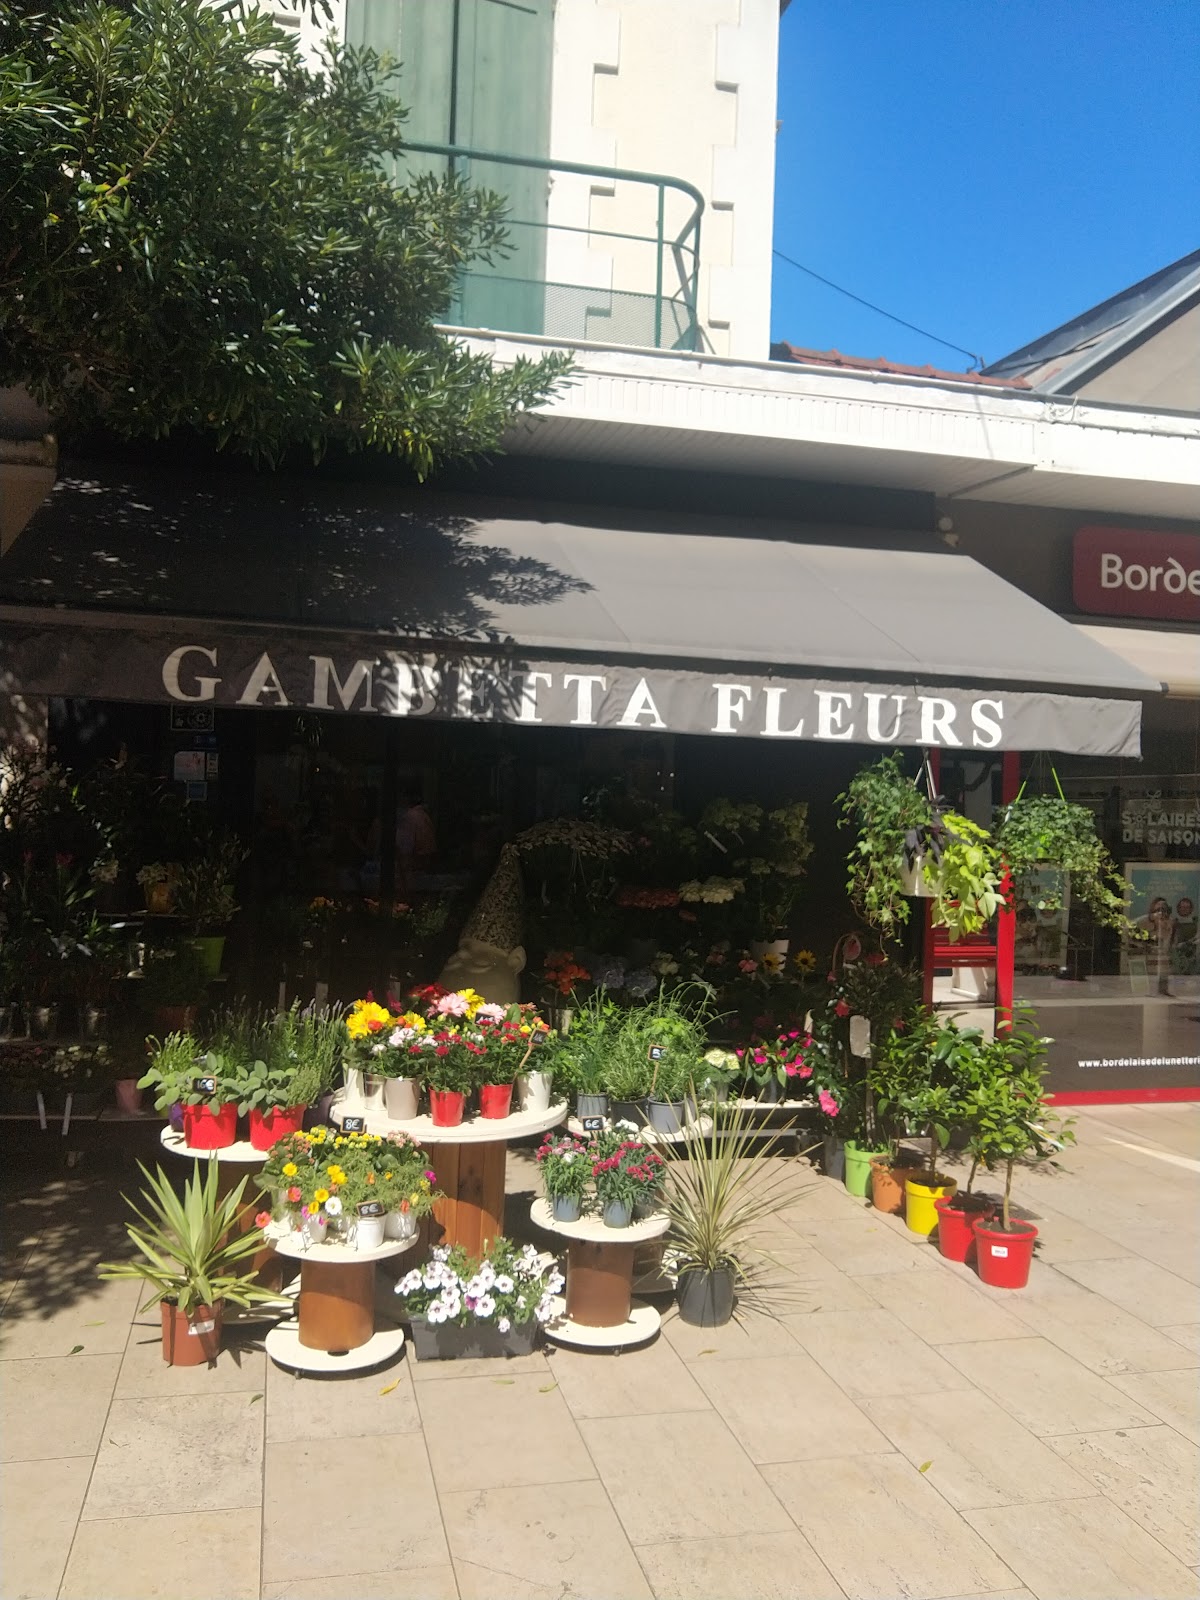 Gambetta Fleurs